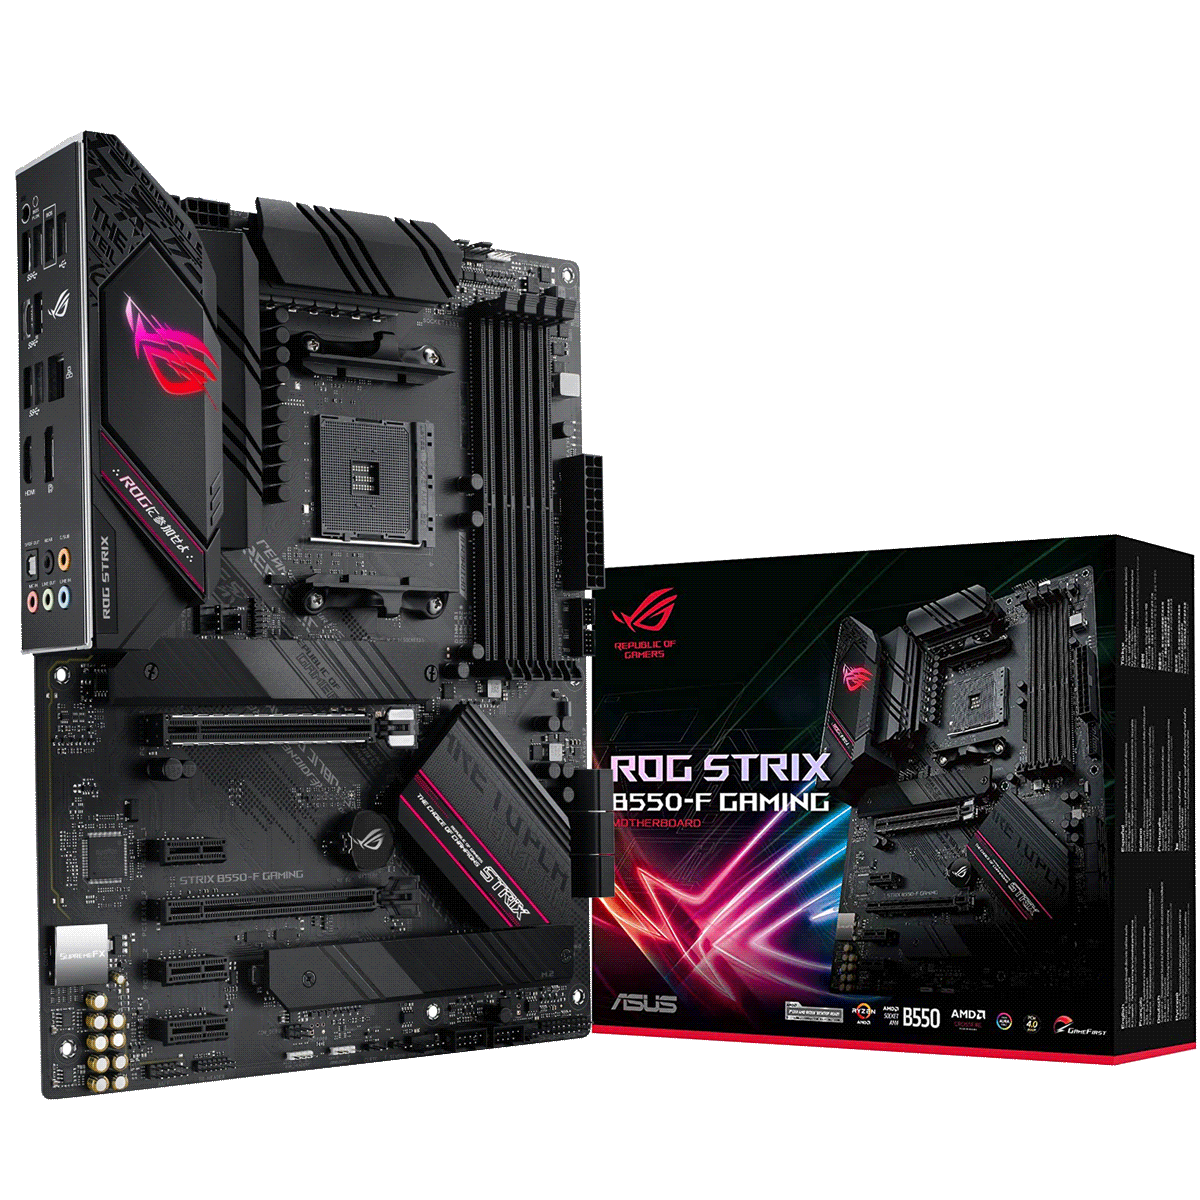 PC Bundle • AMD Ryzen 7 5800X • Asus Rog Strix B550-F Gaming • 16GB DDR4-3200 Ram